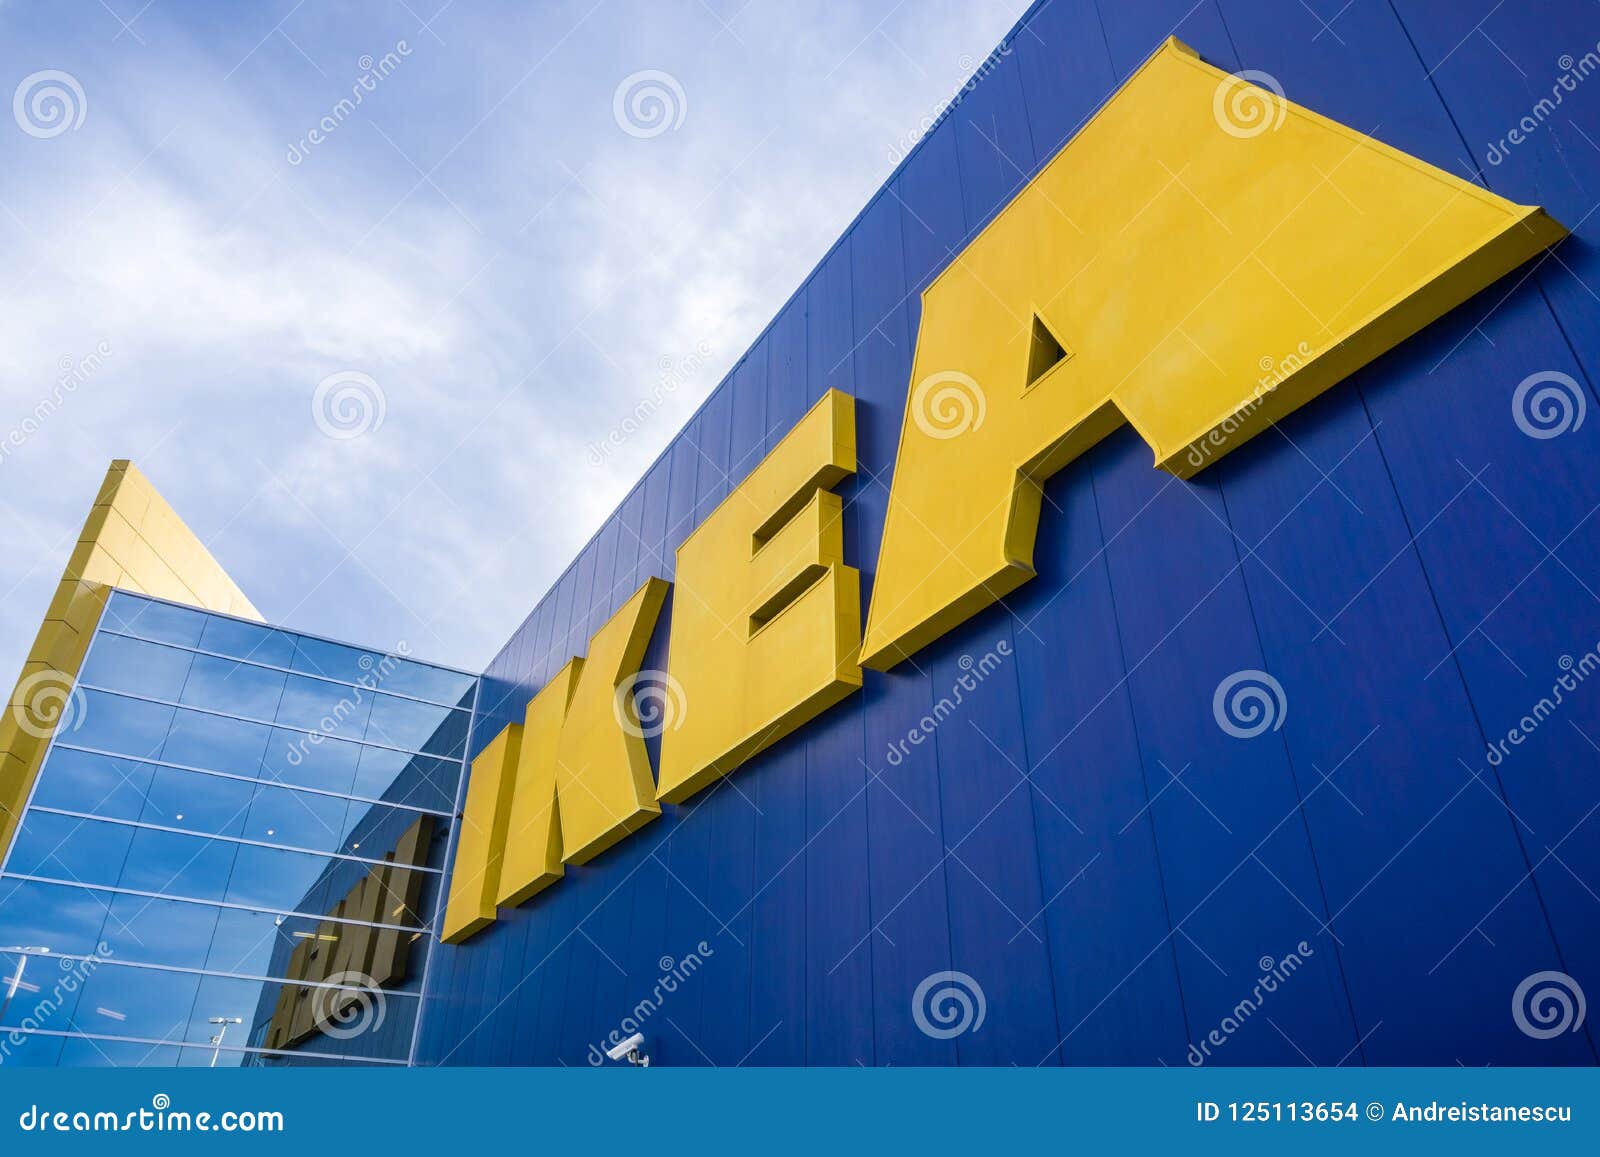 Schotel diameter moeilijk tevreden te krijgen IKEA store logo editorial stock image. Image of business - 125113654